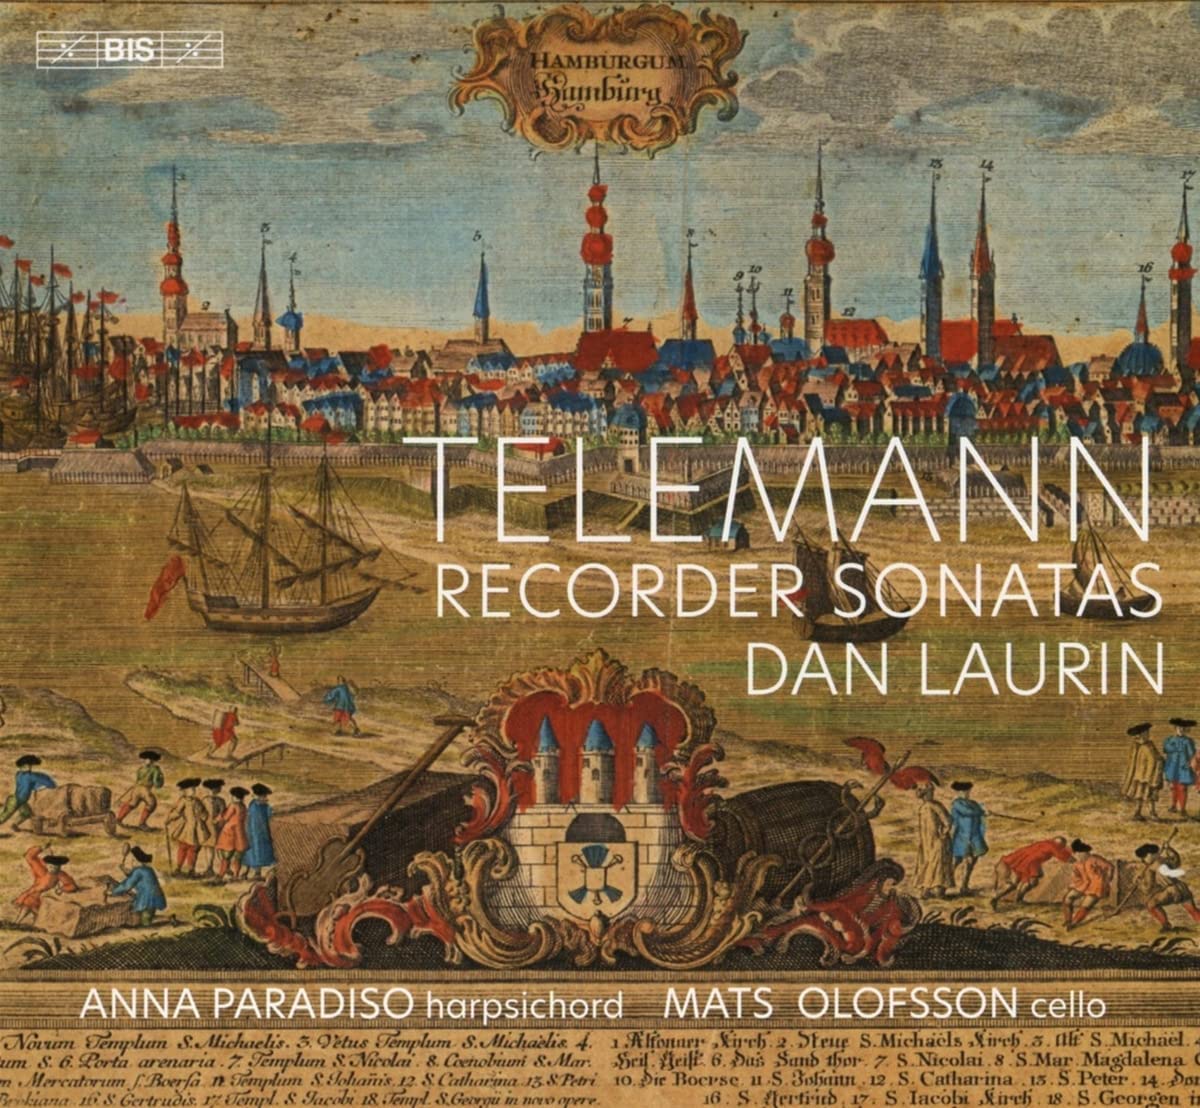 CD cover Dan Laurin Telemann Recorder Sonatas